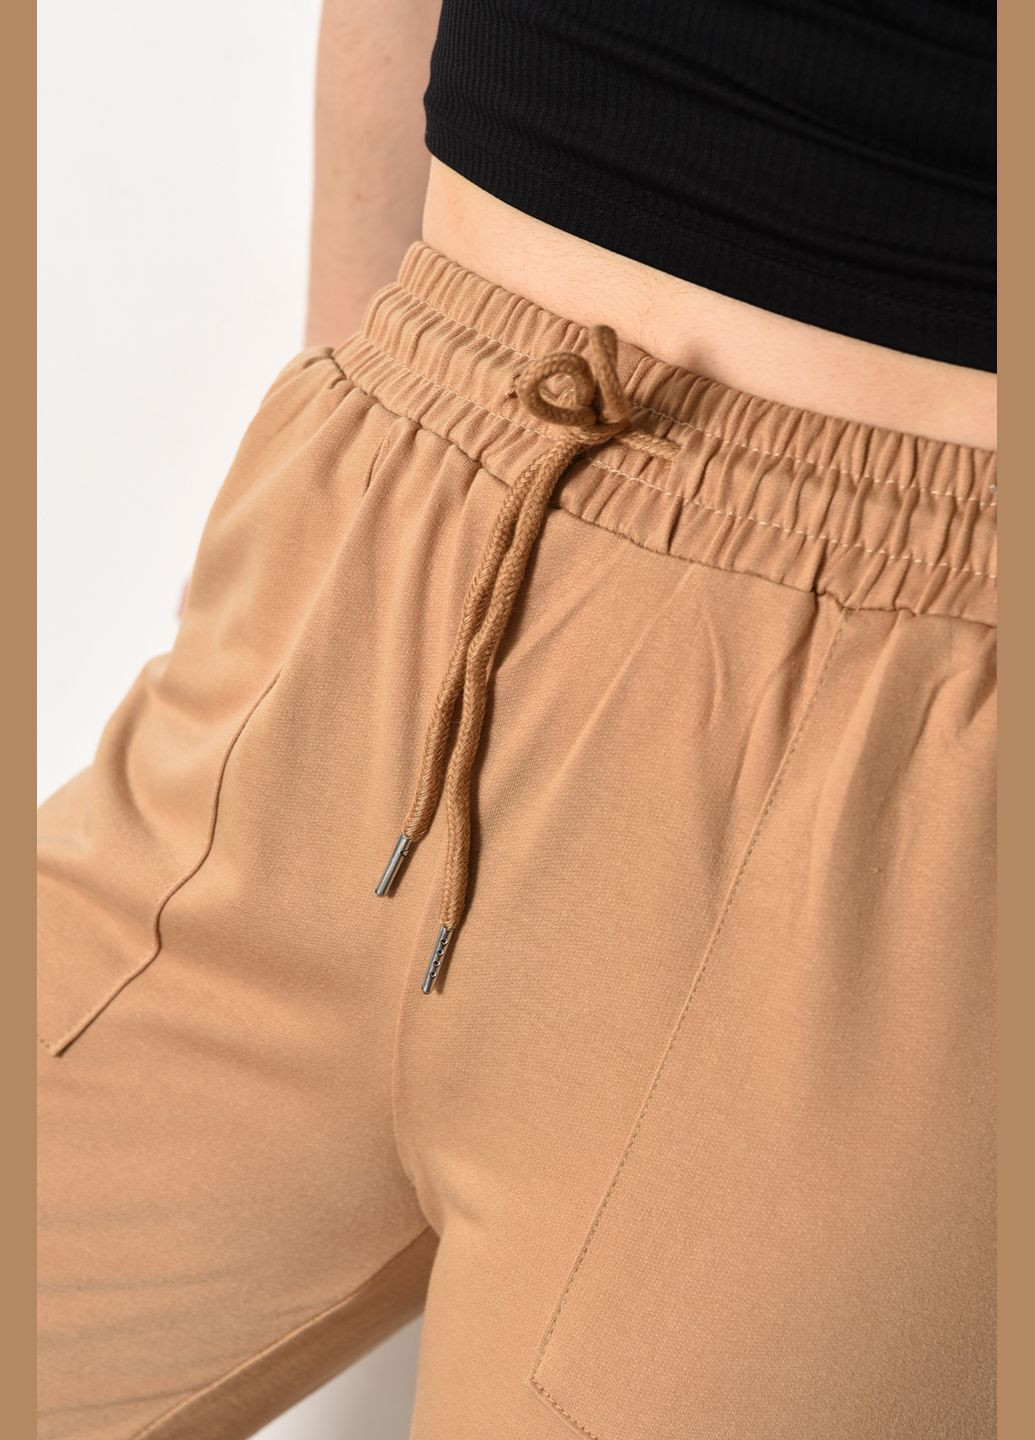 Спортивные штаны женские бежевого цвета Let's Shop (287558858)